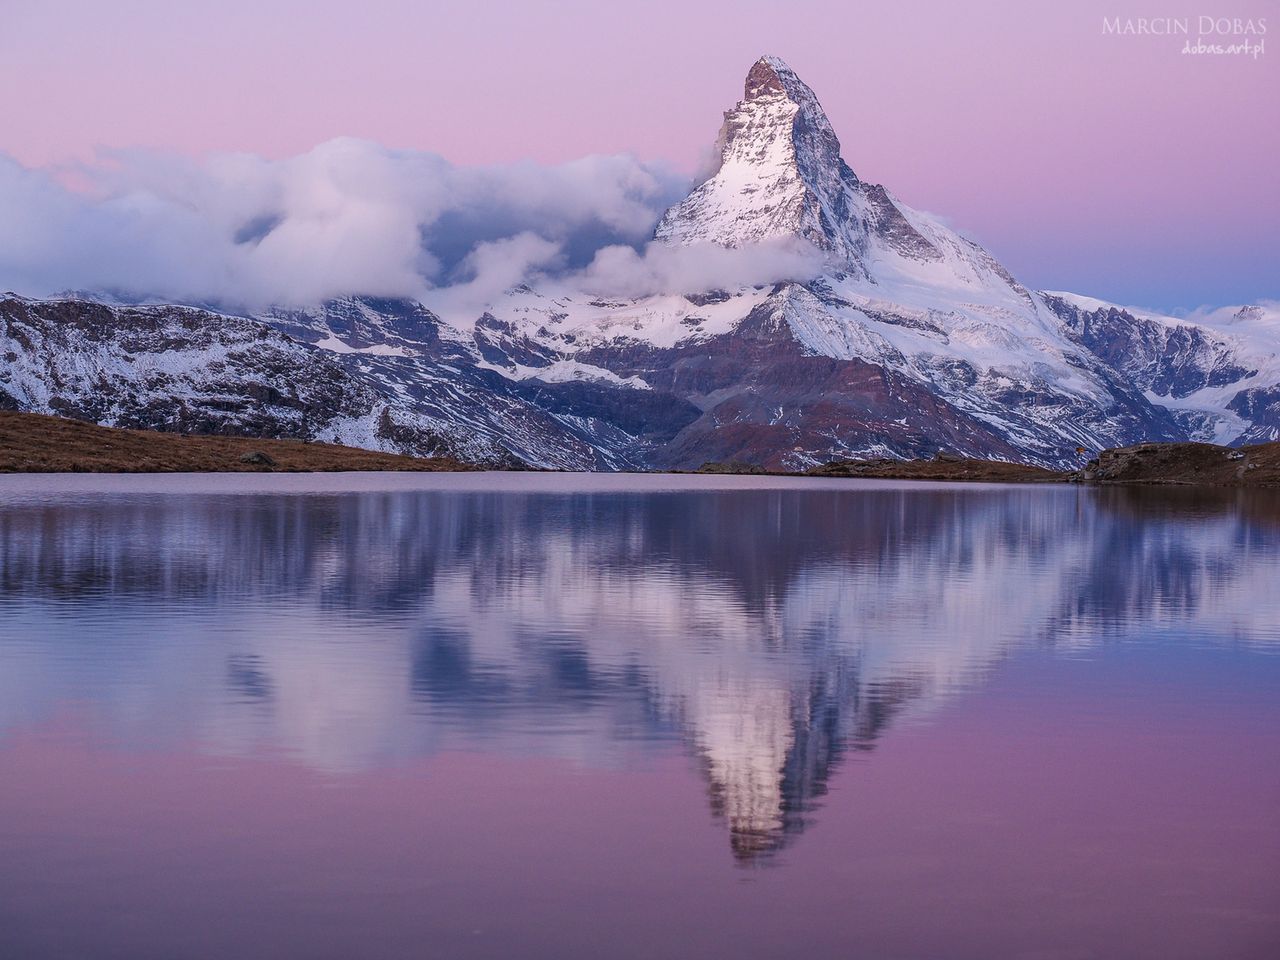 Matterhorn o wschodzie - czyli efekt przygotowań